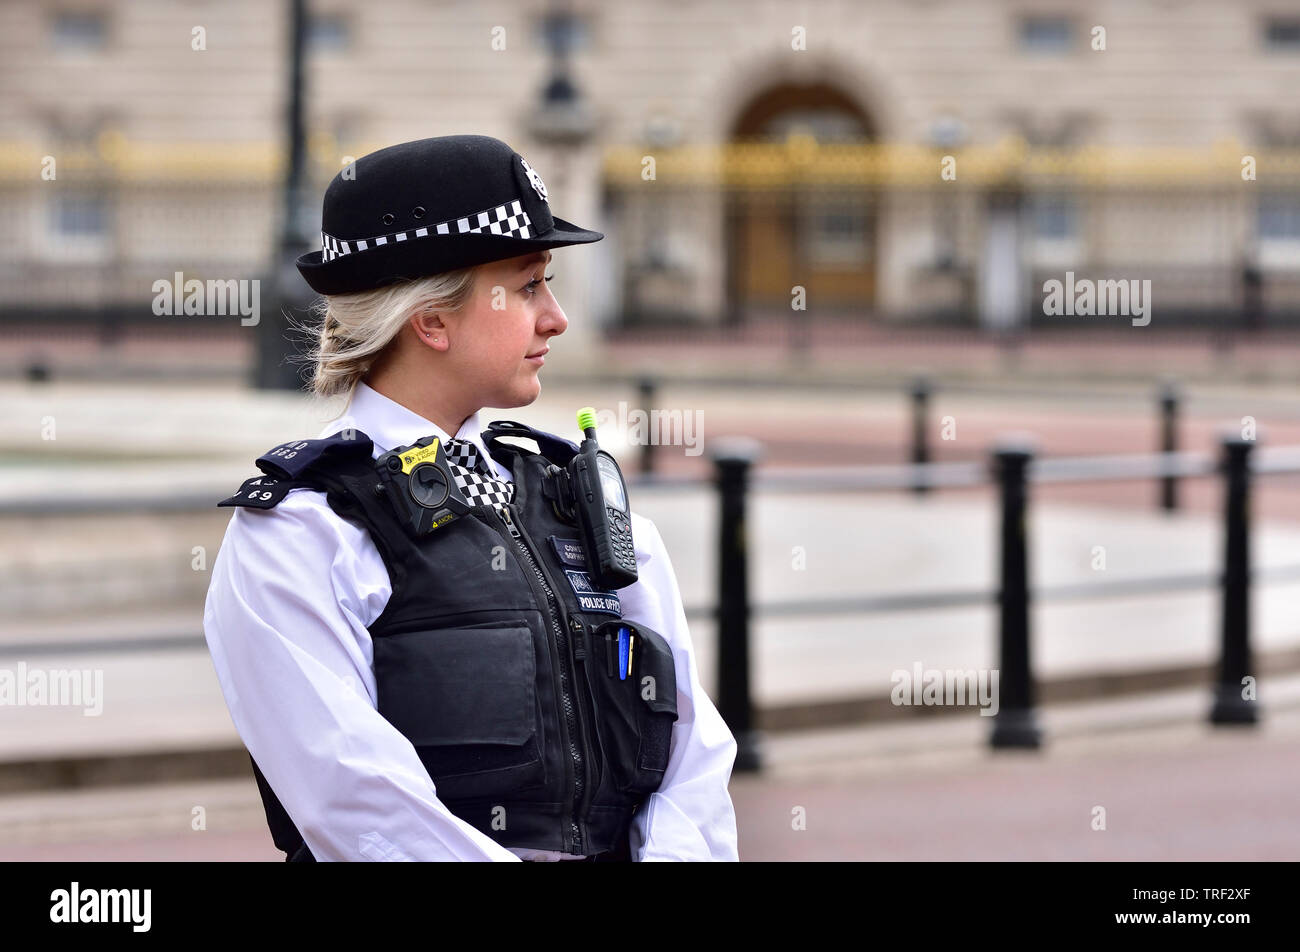 Londres, Inglaterra, Reino Unido. Oficial de guardia de la Policía Metropolitana alrededor del Mall durante la visita de estado del magnate Donald Trump, 3 de junio de 2019 Foto de stock